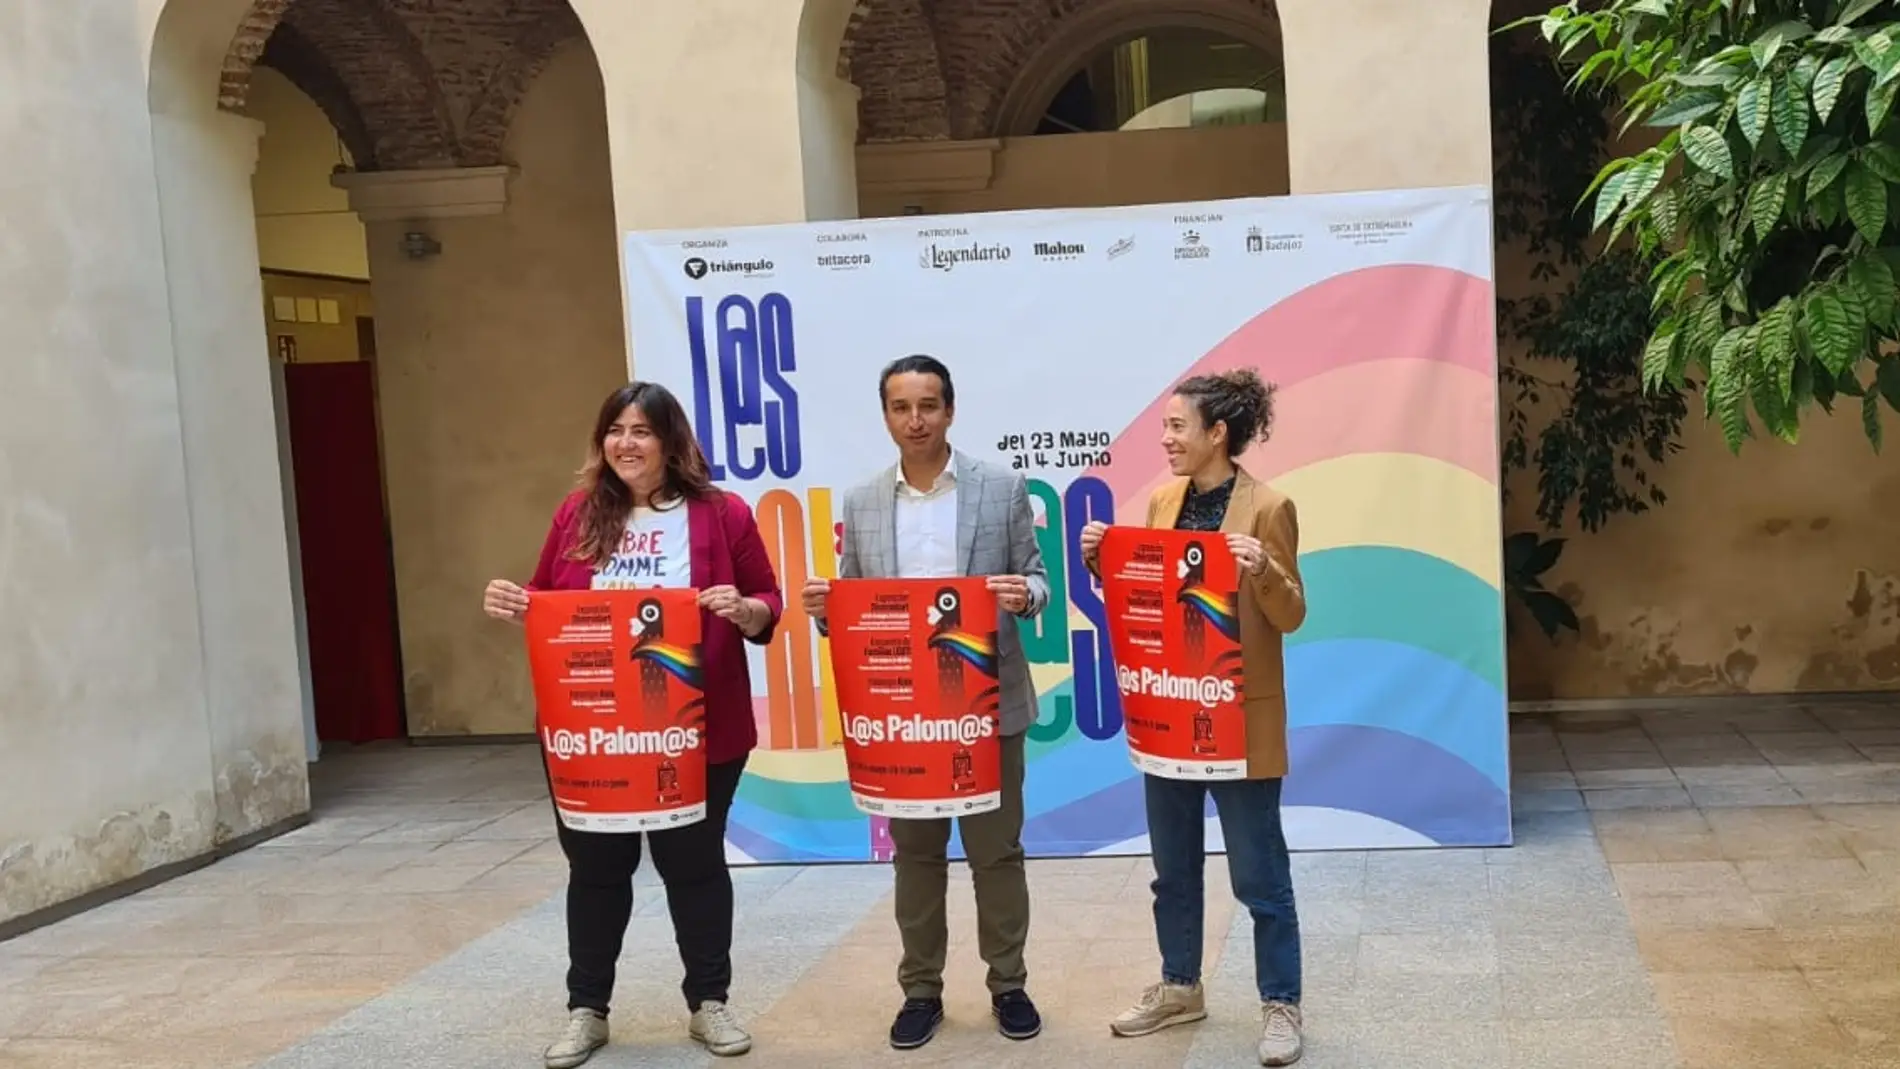 La Fiesta de Los Palomos programa actividades en el edificio El Hospital como un Encuentro de Familias LGBTI y los Palomos Kids